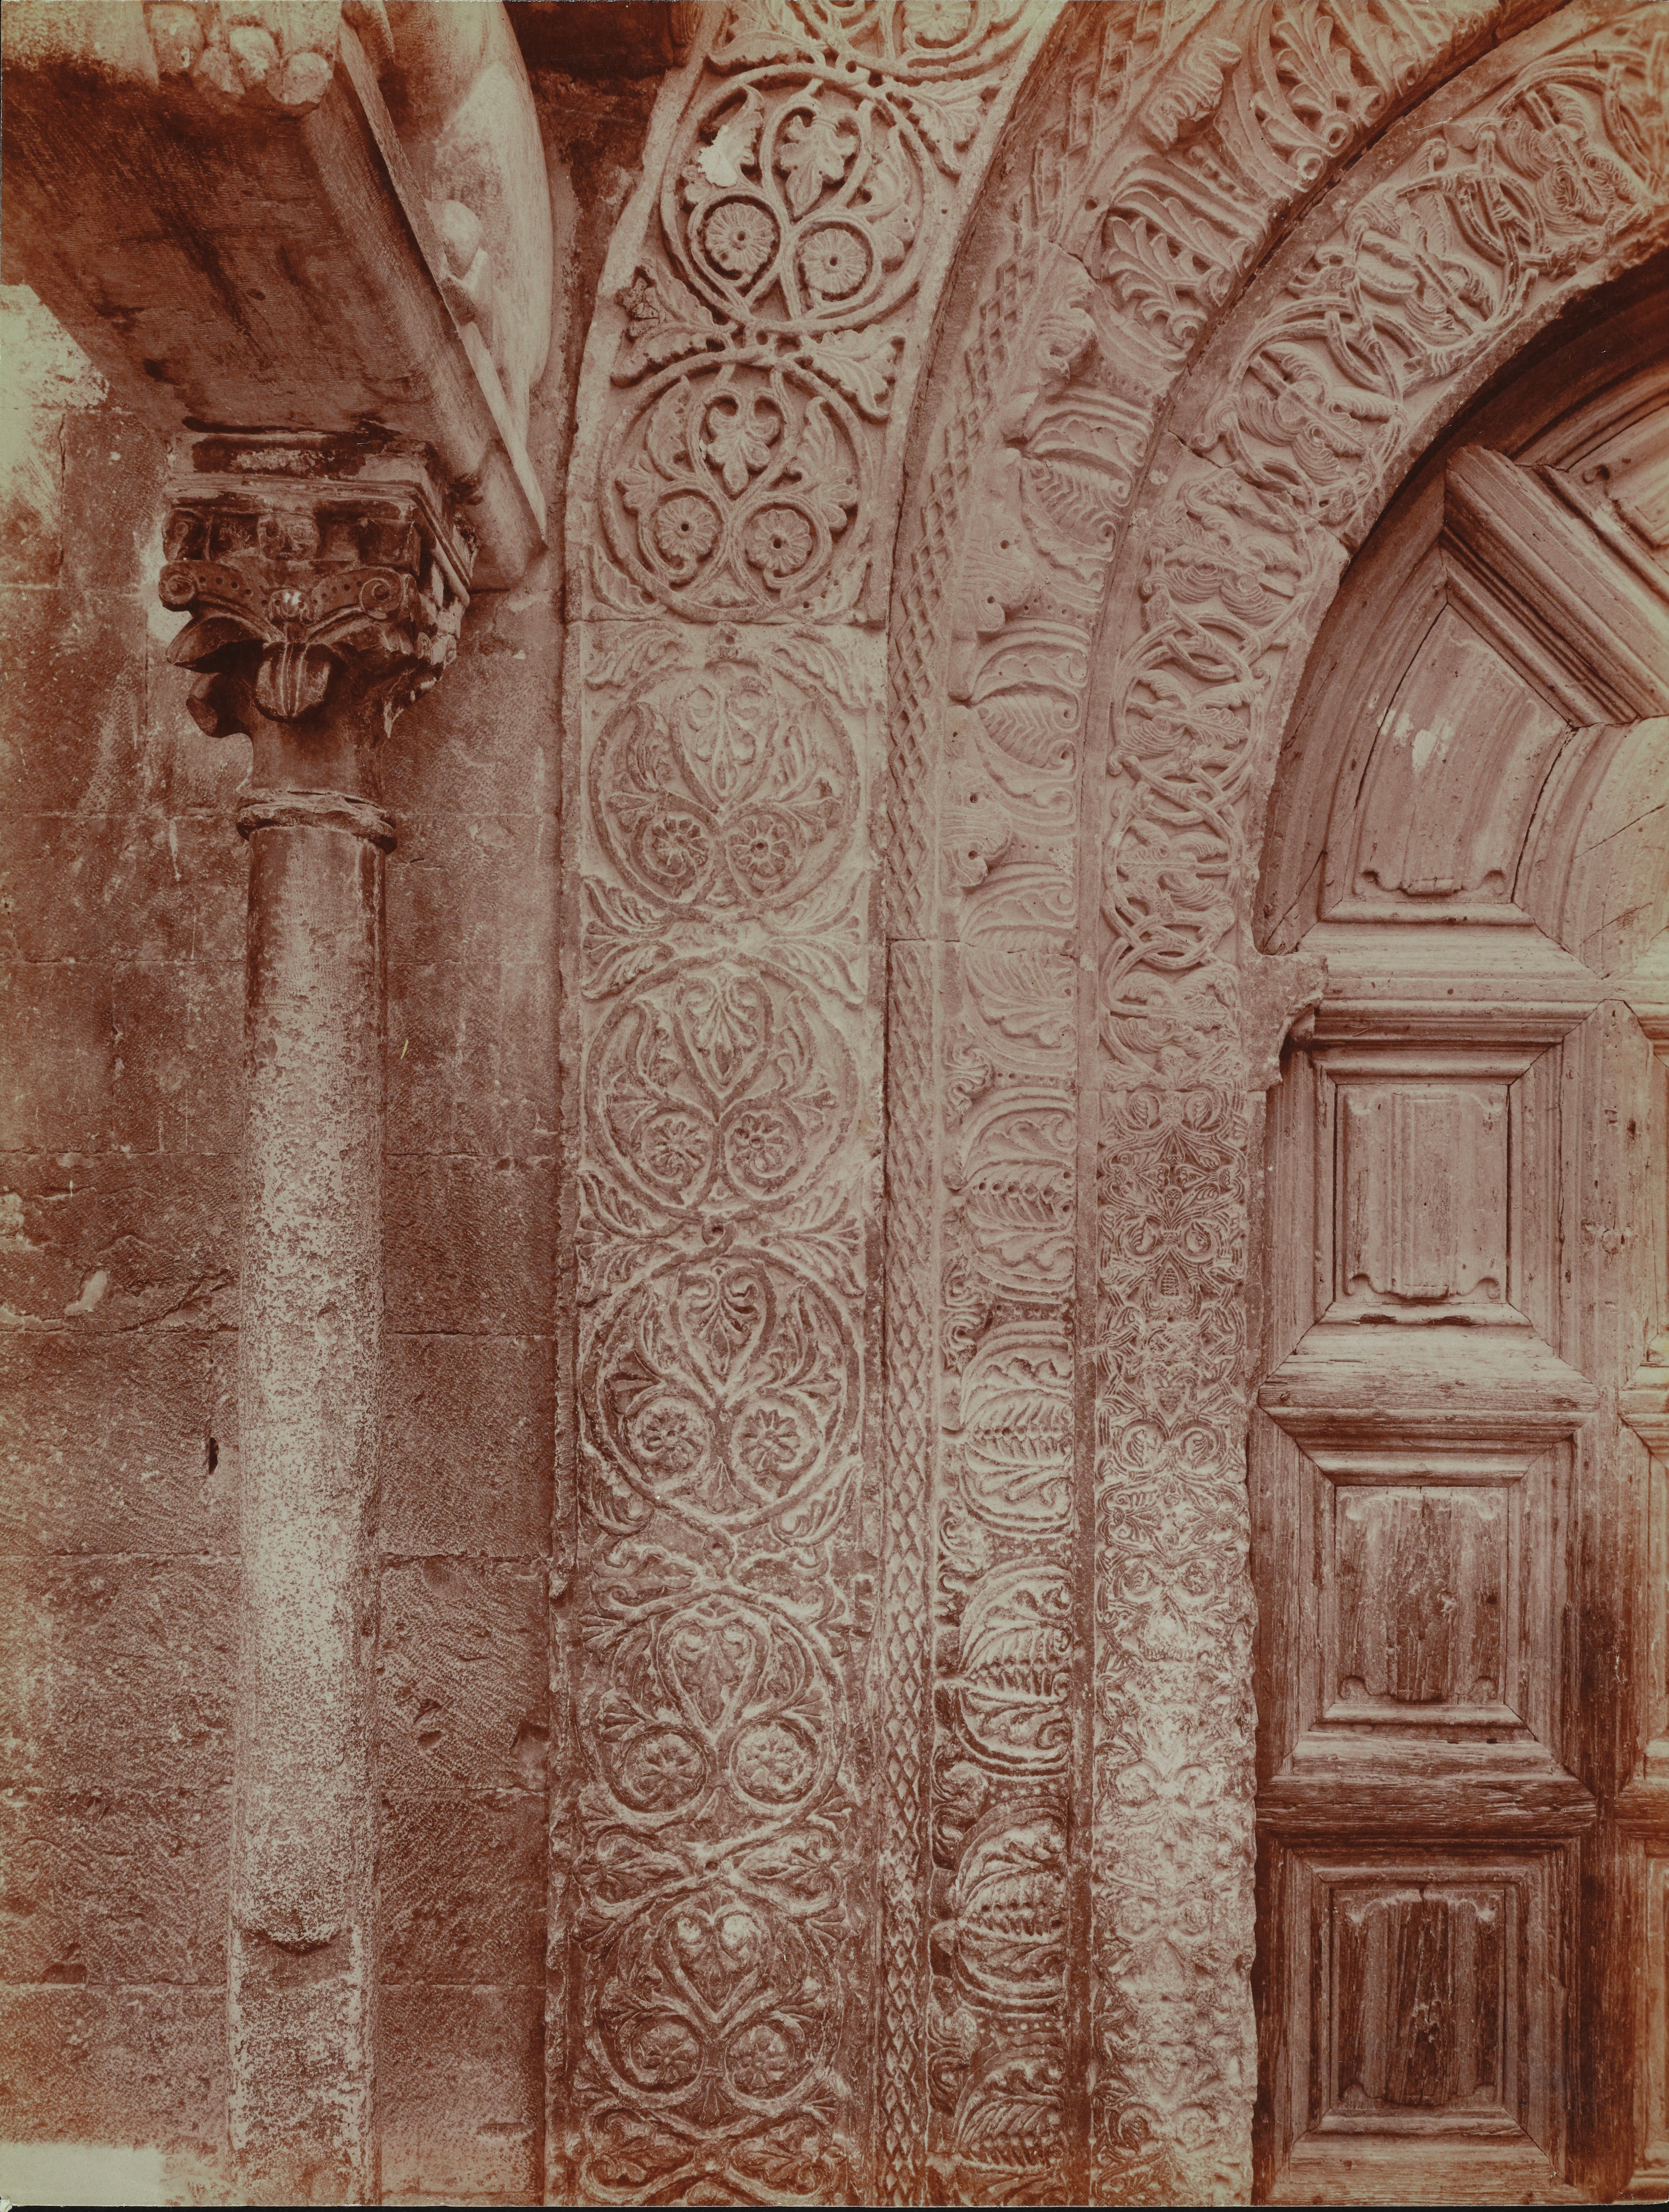 Fotografo non identificato, Ruvo di Puglia - Cattedrale S. Maria Assunta, portale, particolare, 1901-1910, albumina, MPI6091658